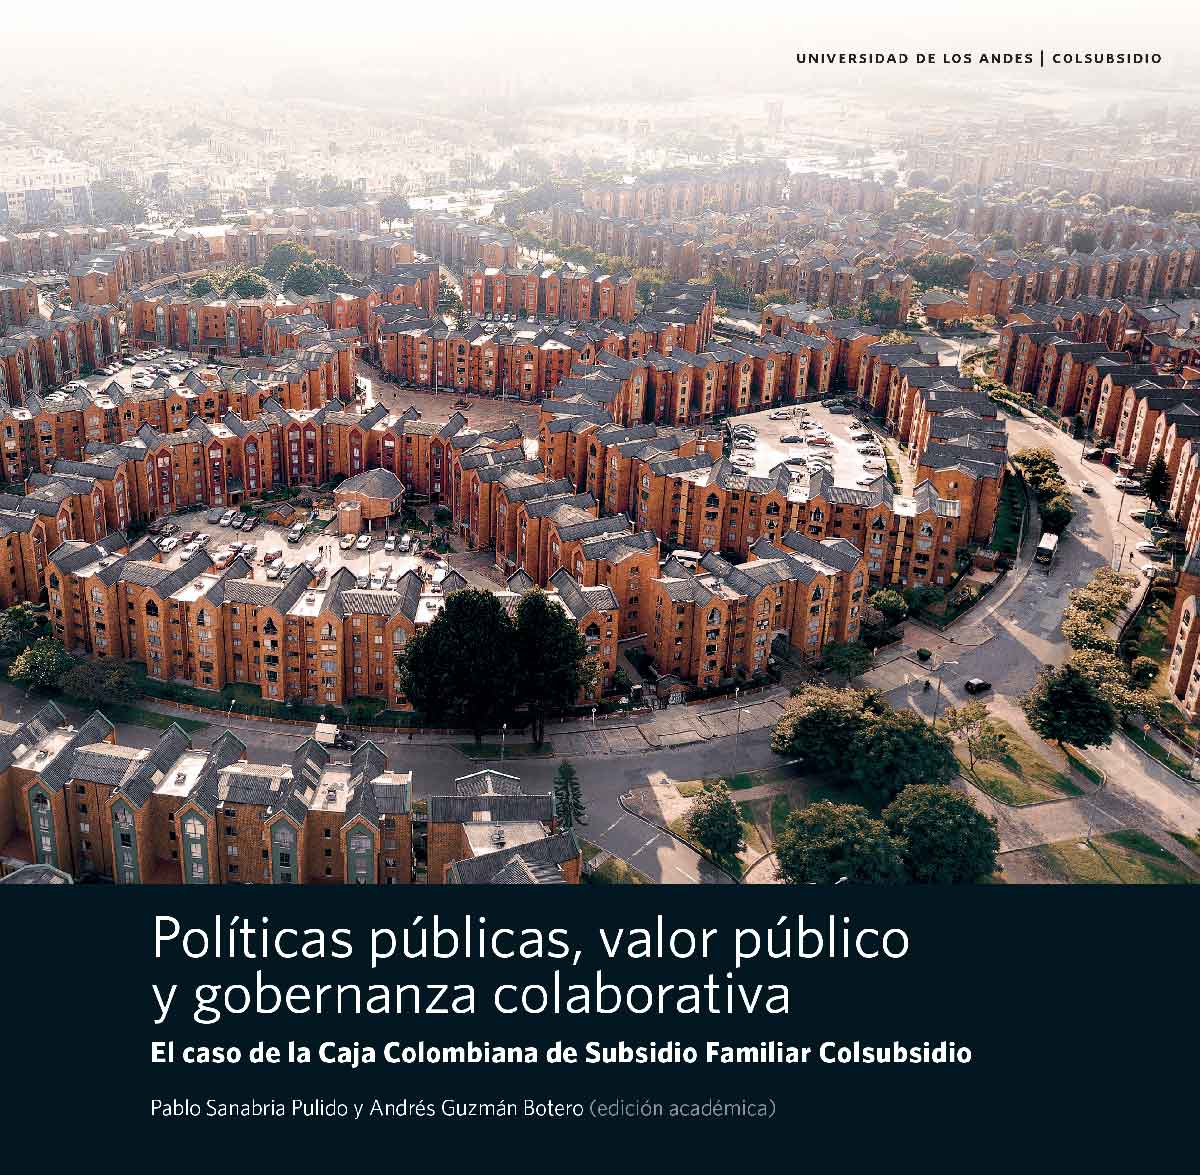 Politicas-publicas-valor-publico-y-gobernanza-colaborativa